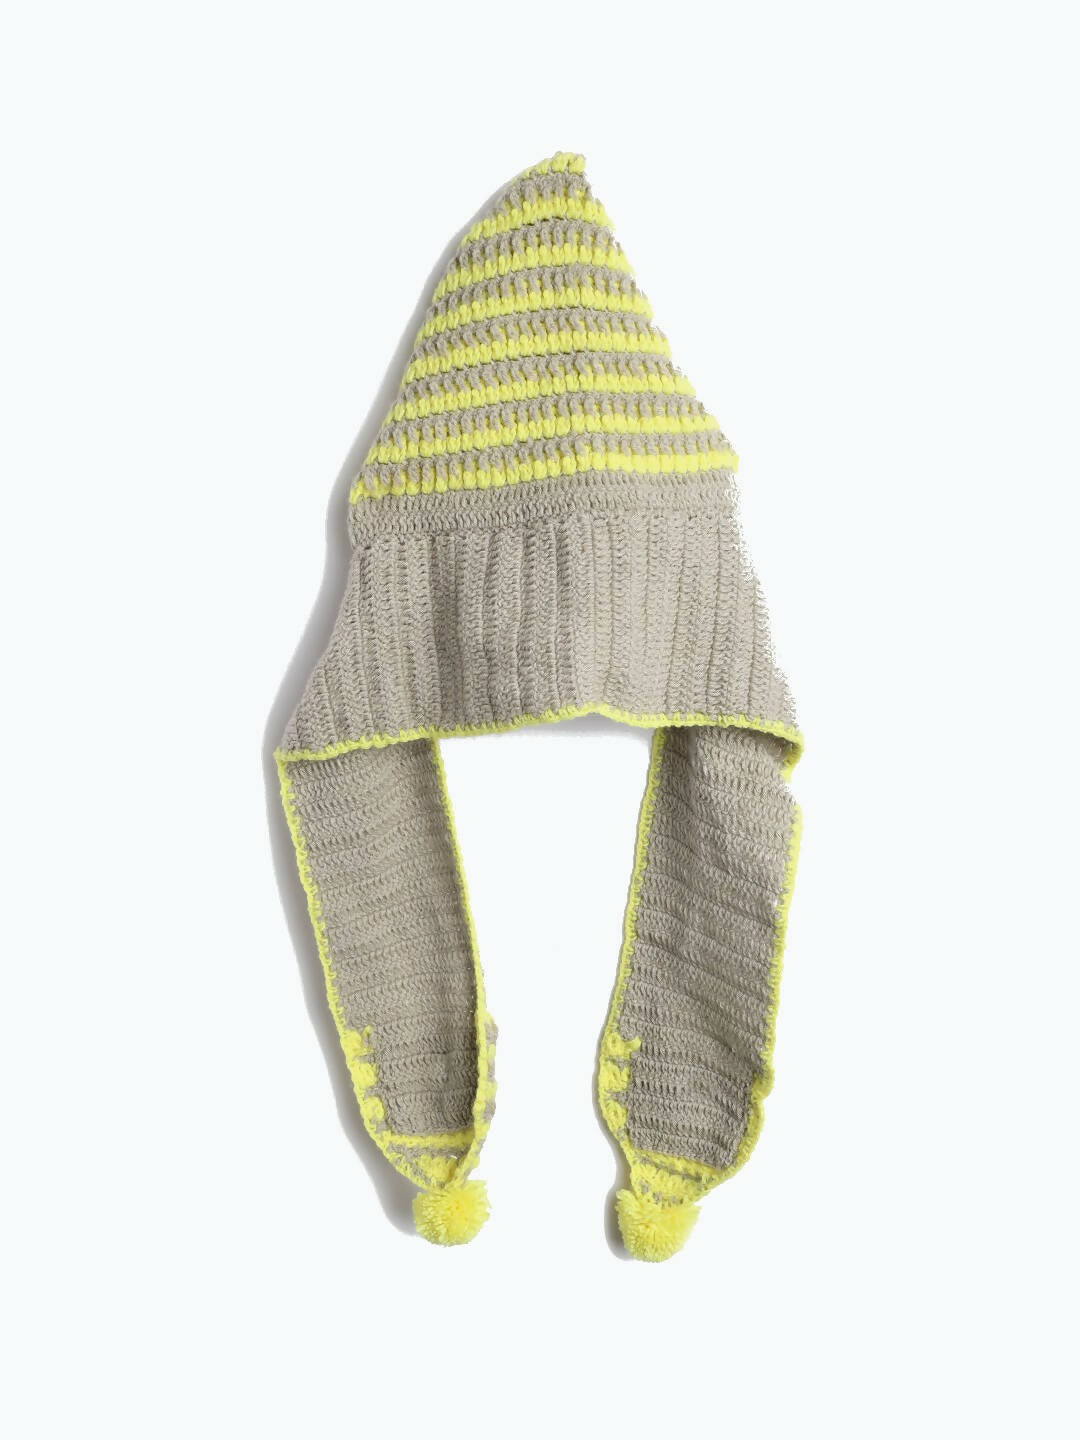 Chutput Kids Woollen Hand Knitted Striped Design Cap - Grey - Distacart